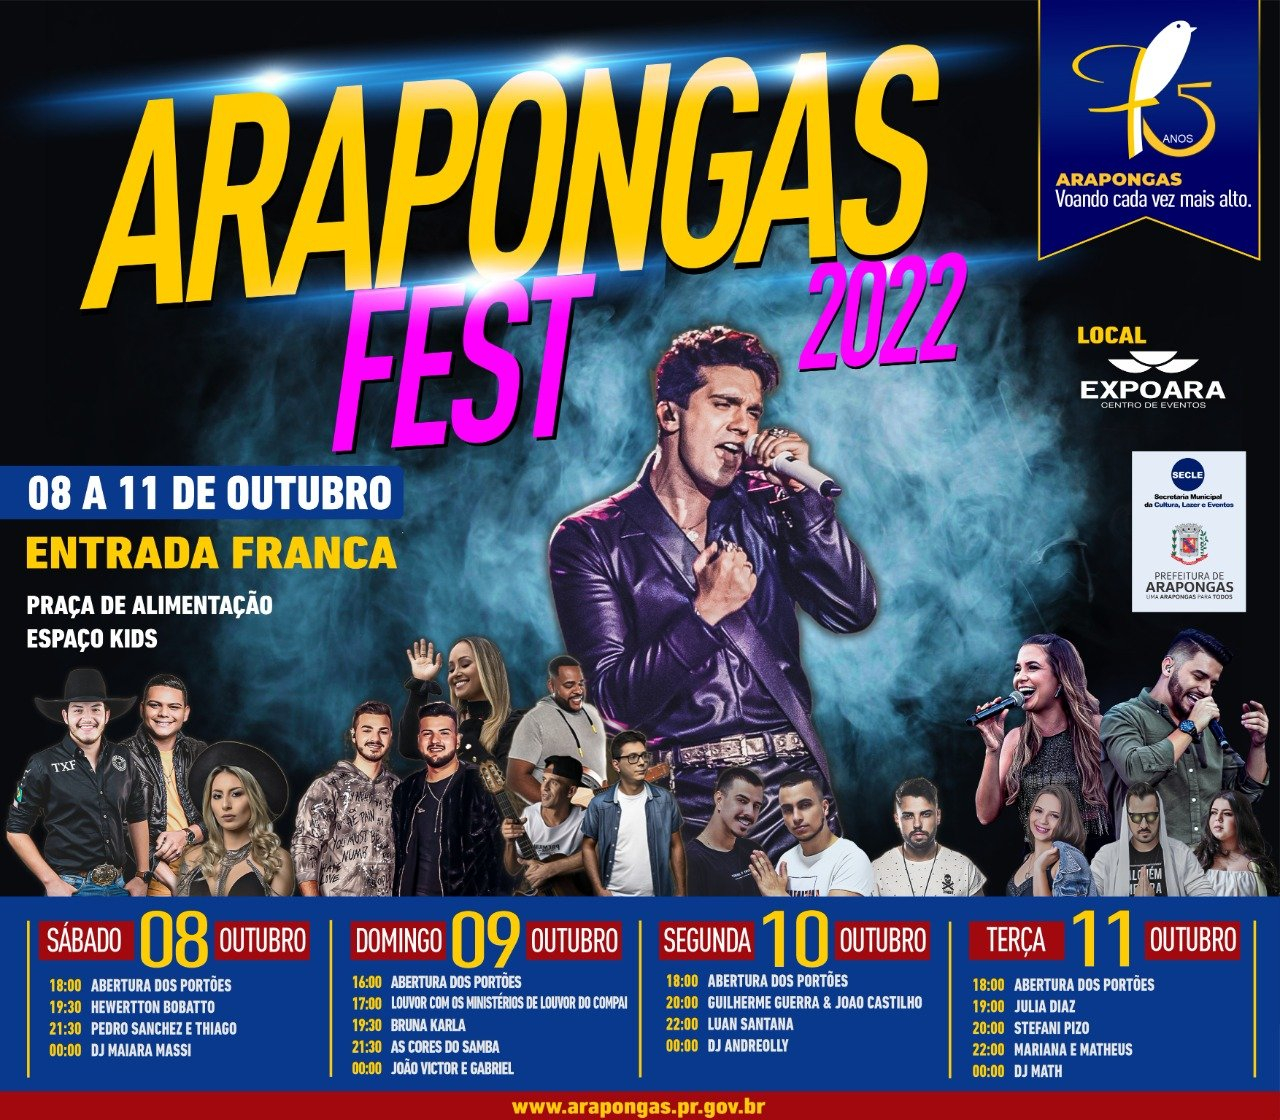 De 8 a 11 de Outubro: Vem aí, a Arapongas Fest 2022 com shows gratuitos